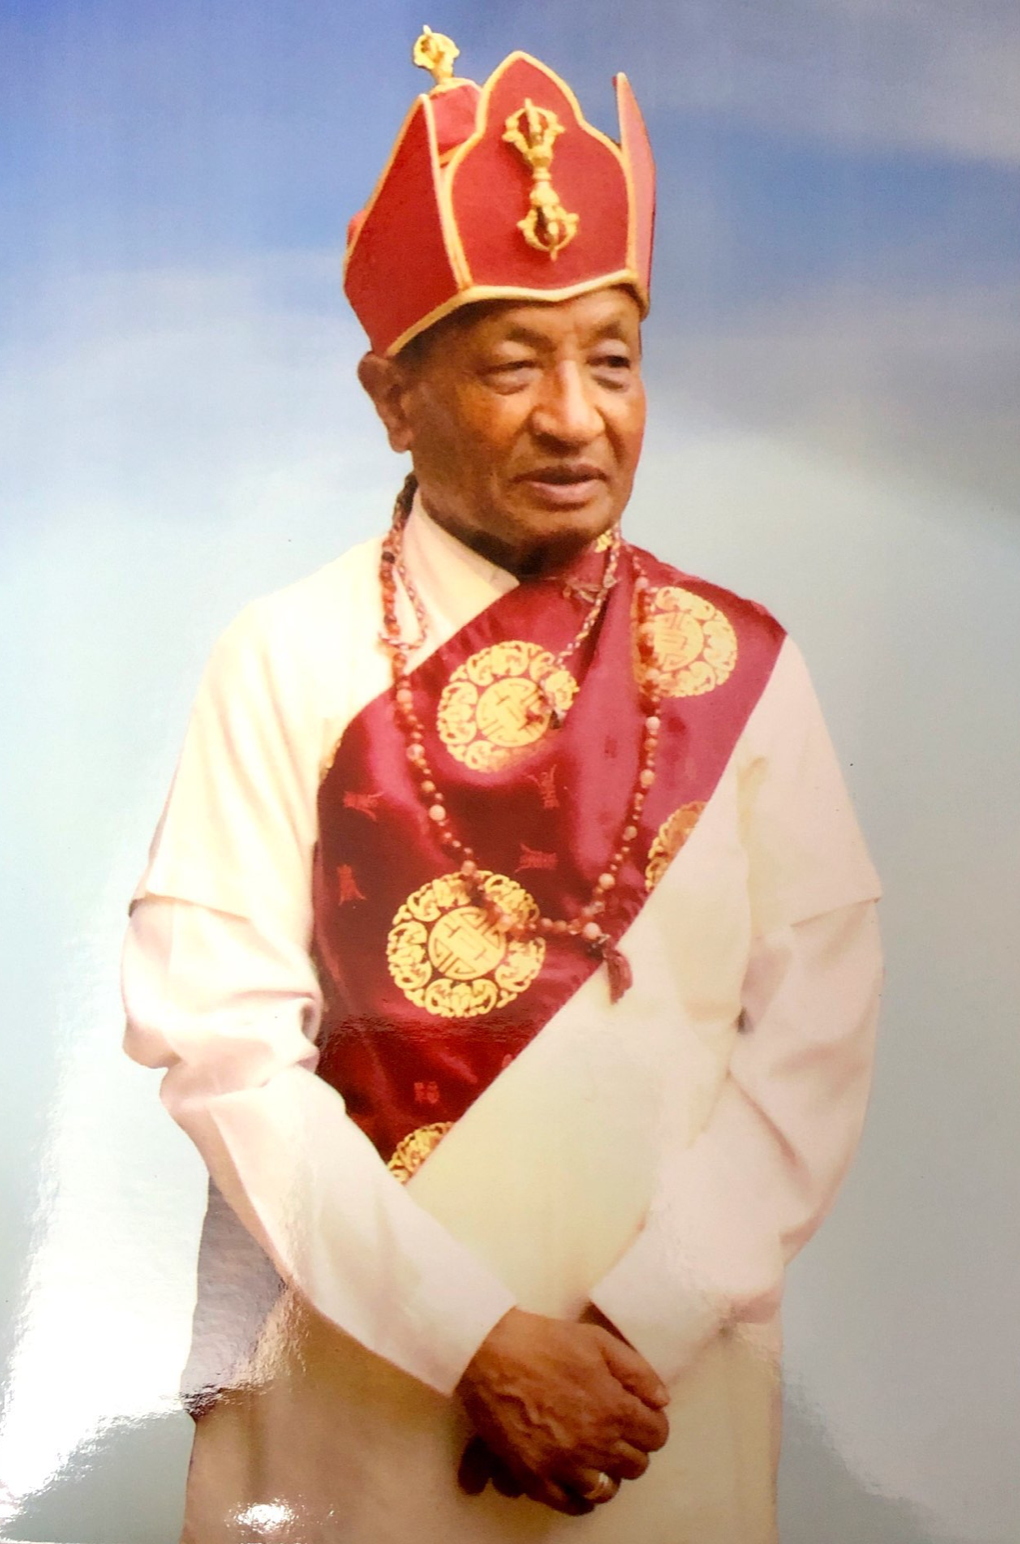 Yagya Man in traditional buddhist attire.